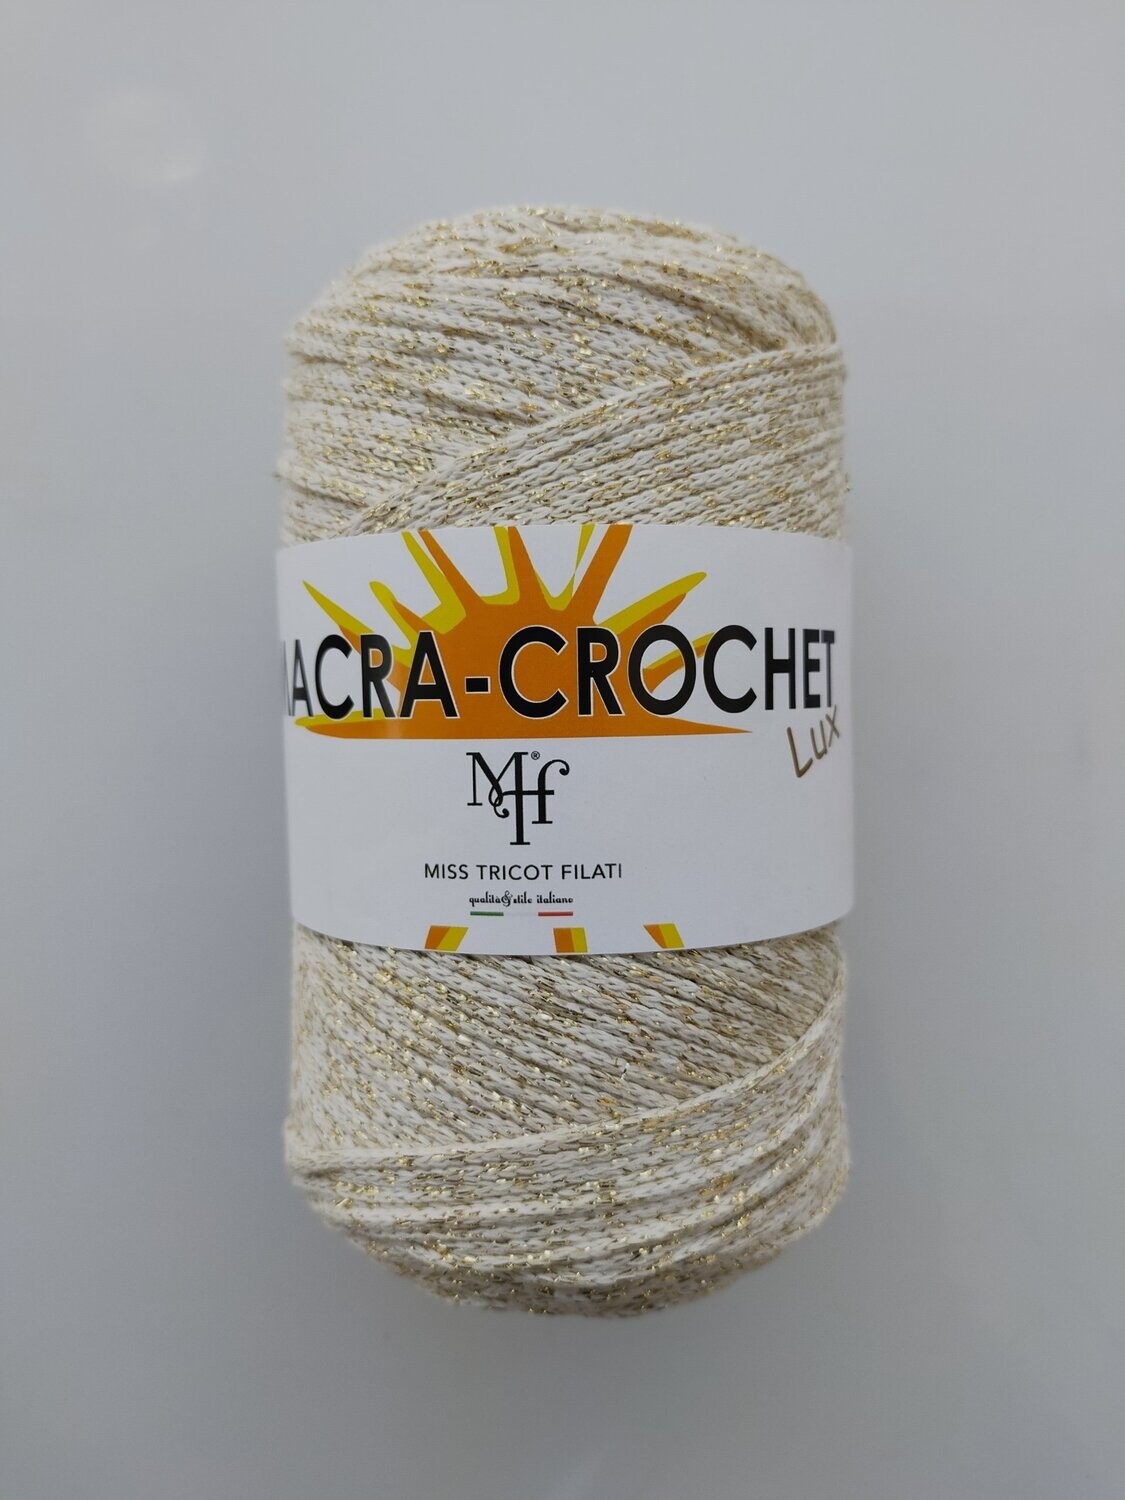 Macra Crochet Lux